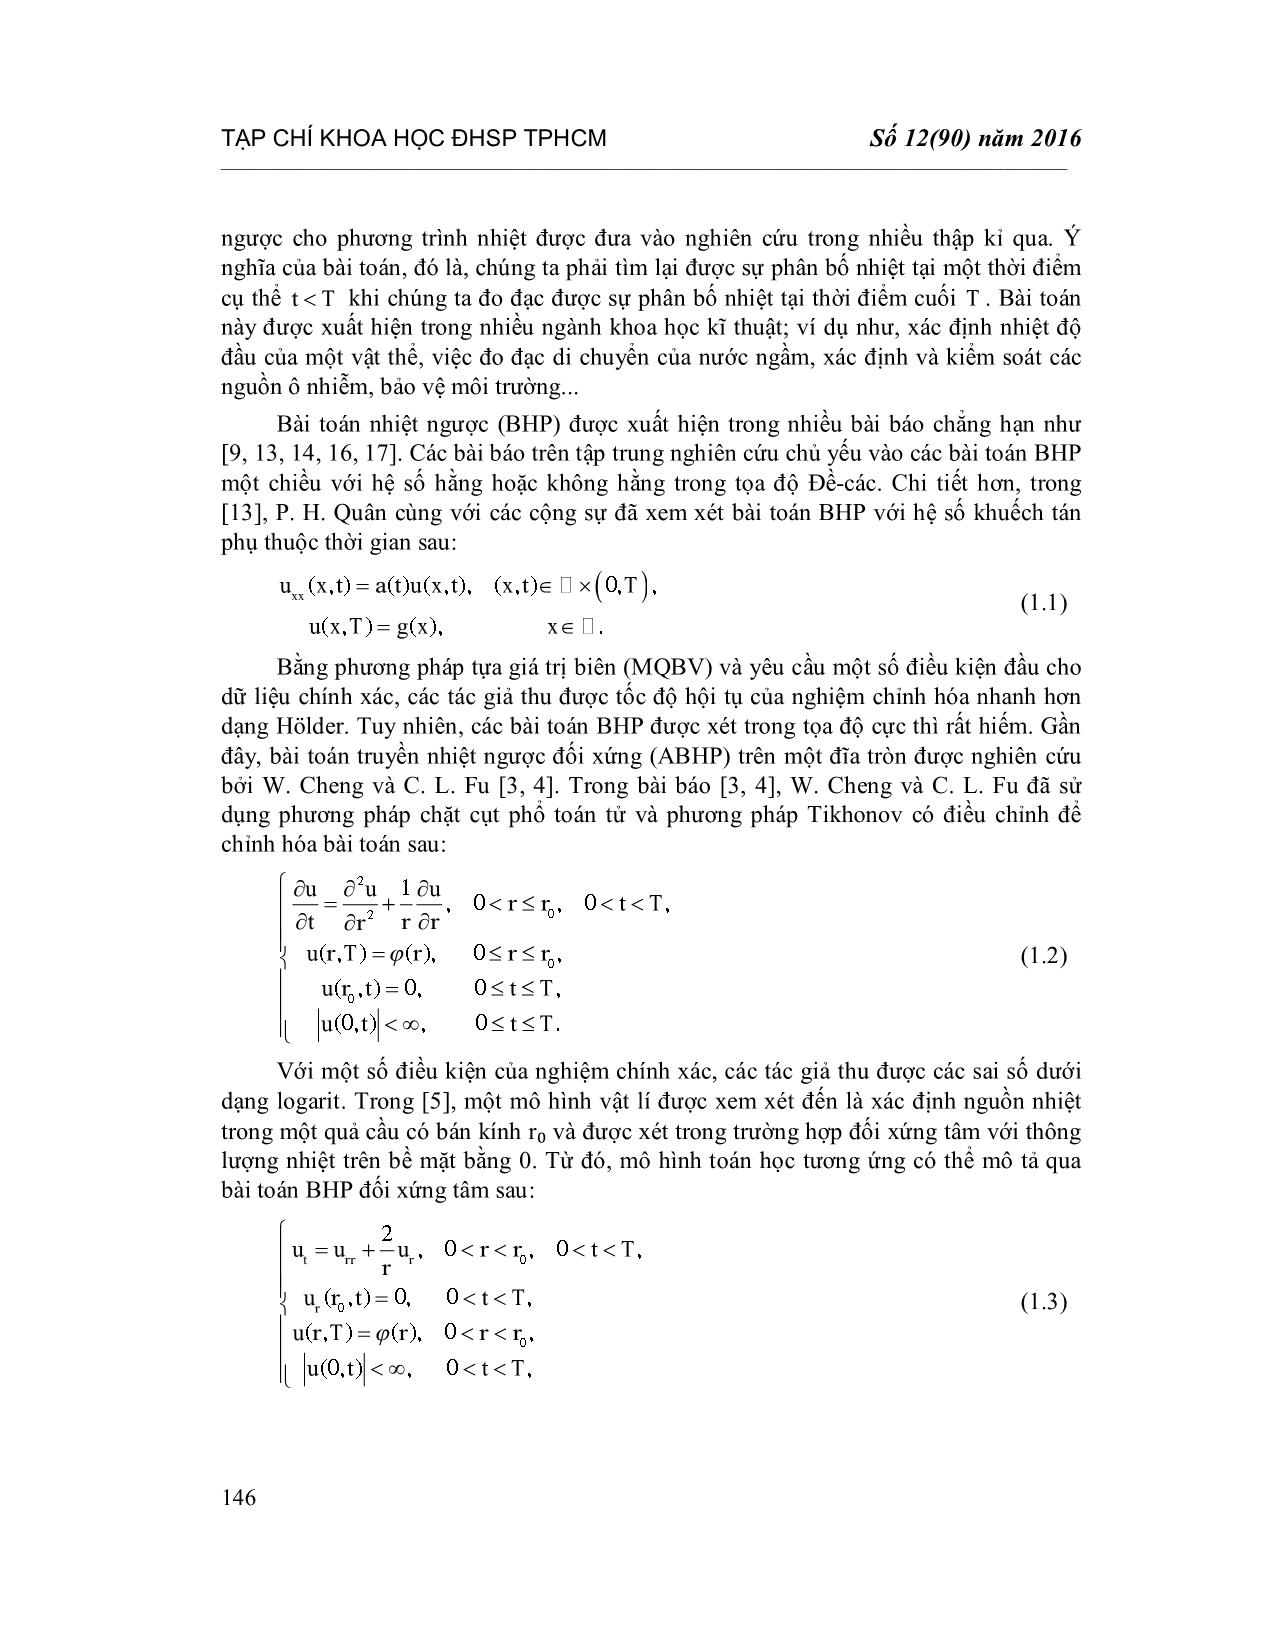 Chỉnh hóa bài toán nhiệt ngược với hệ số phụ thuộc thời gian trong tọa độ cầu trang 2